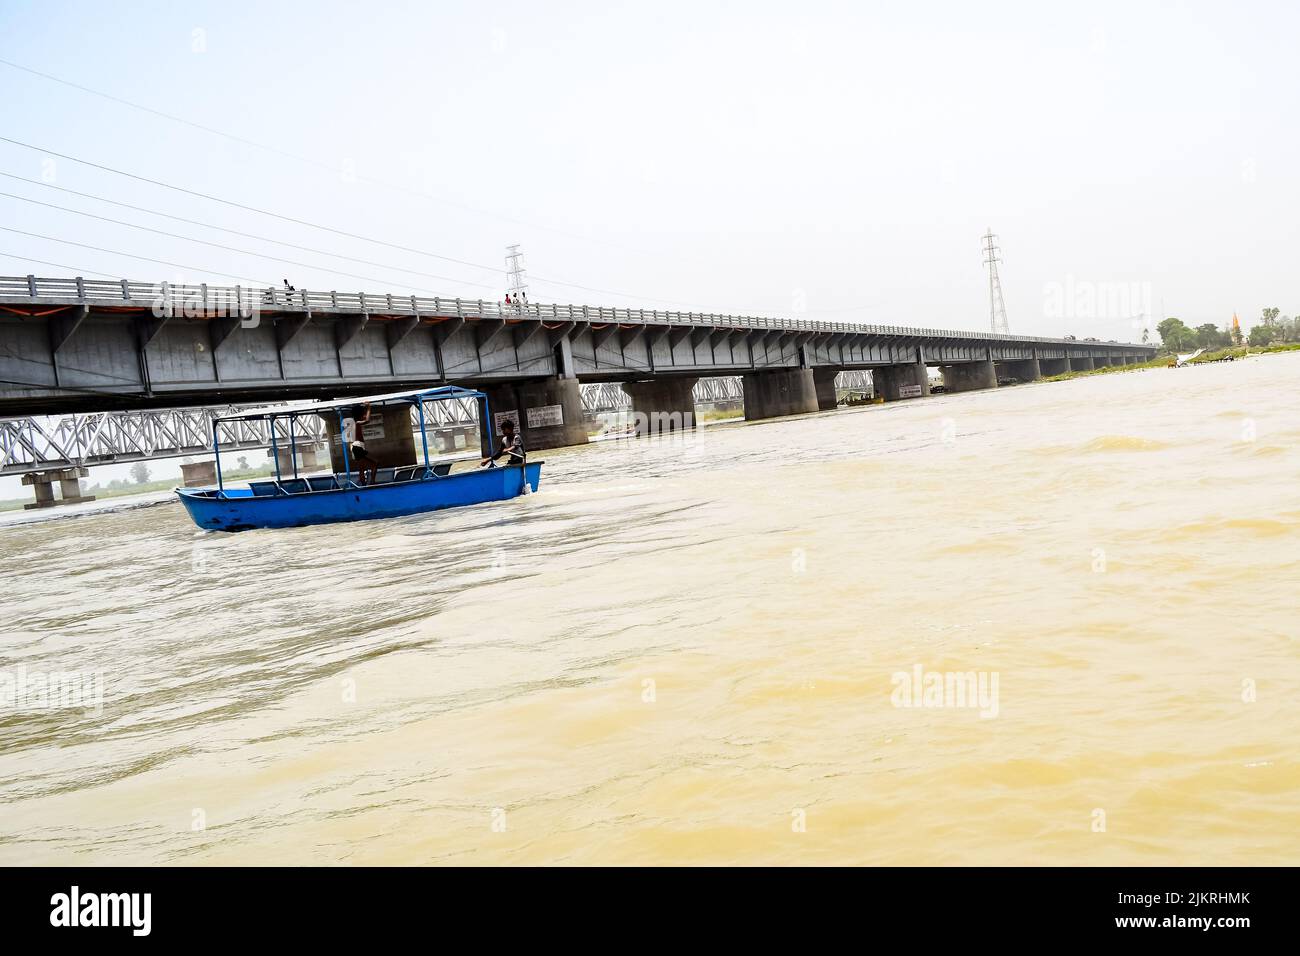 Ganga wie in Garh Mukteshwar, Uttar Pradesh, Indien gesehen, wird der Fluss Ganga als der heiligste Fluss für Hindus angesehen, Ein Blick auf Garh Ganga Brij Ghat Whi Stockfoto